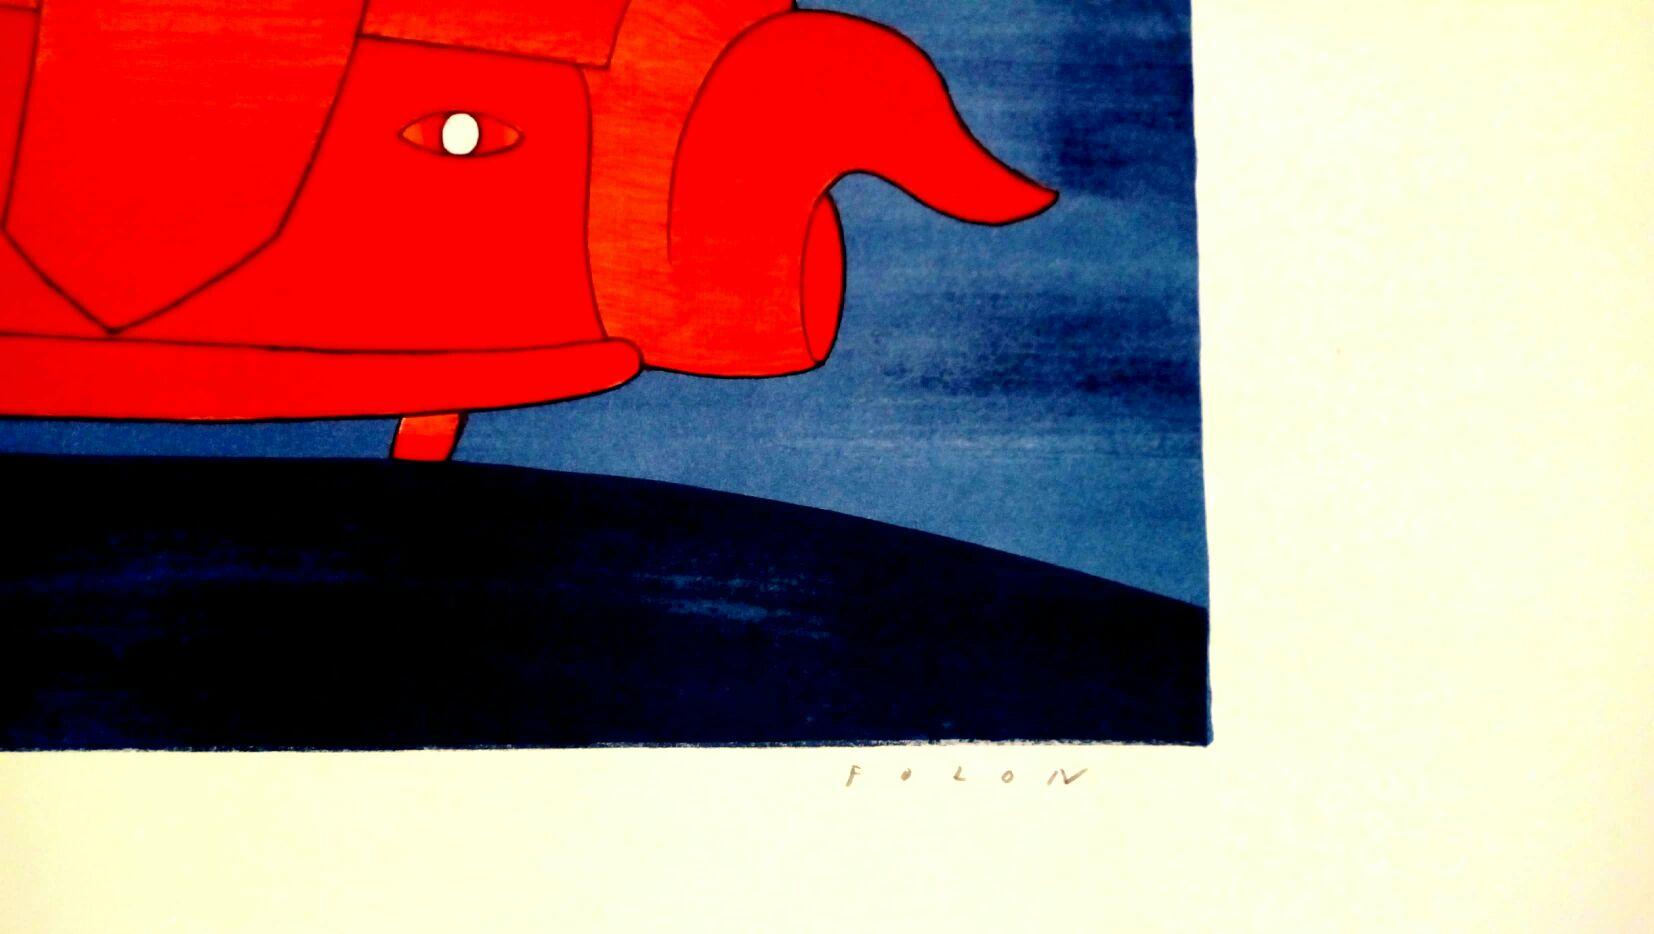 Diabolic Car est une oeuvre d'art originale réalisée par Jean Michel Folon.

Lithographie sur papier. Signé à la main au crayon par l'artiste en bas à droite. Numéroté en bas à gauche. Édition de 80 exemplaires. Des conditions parfaites.

Excellente